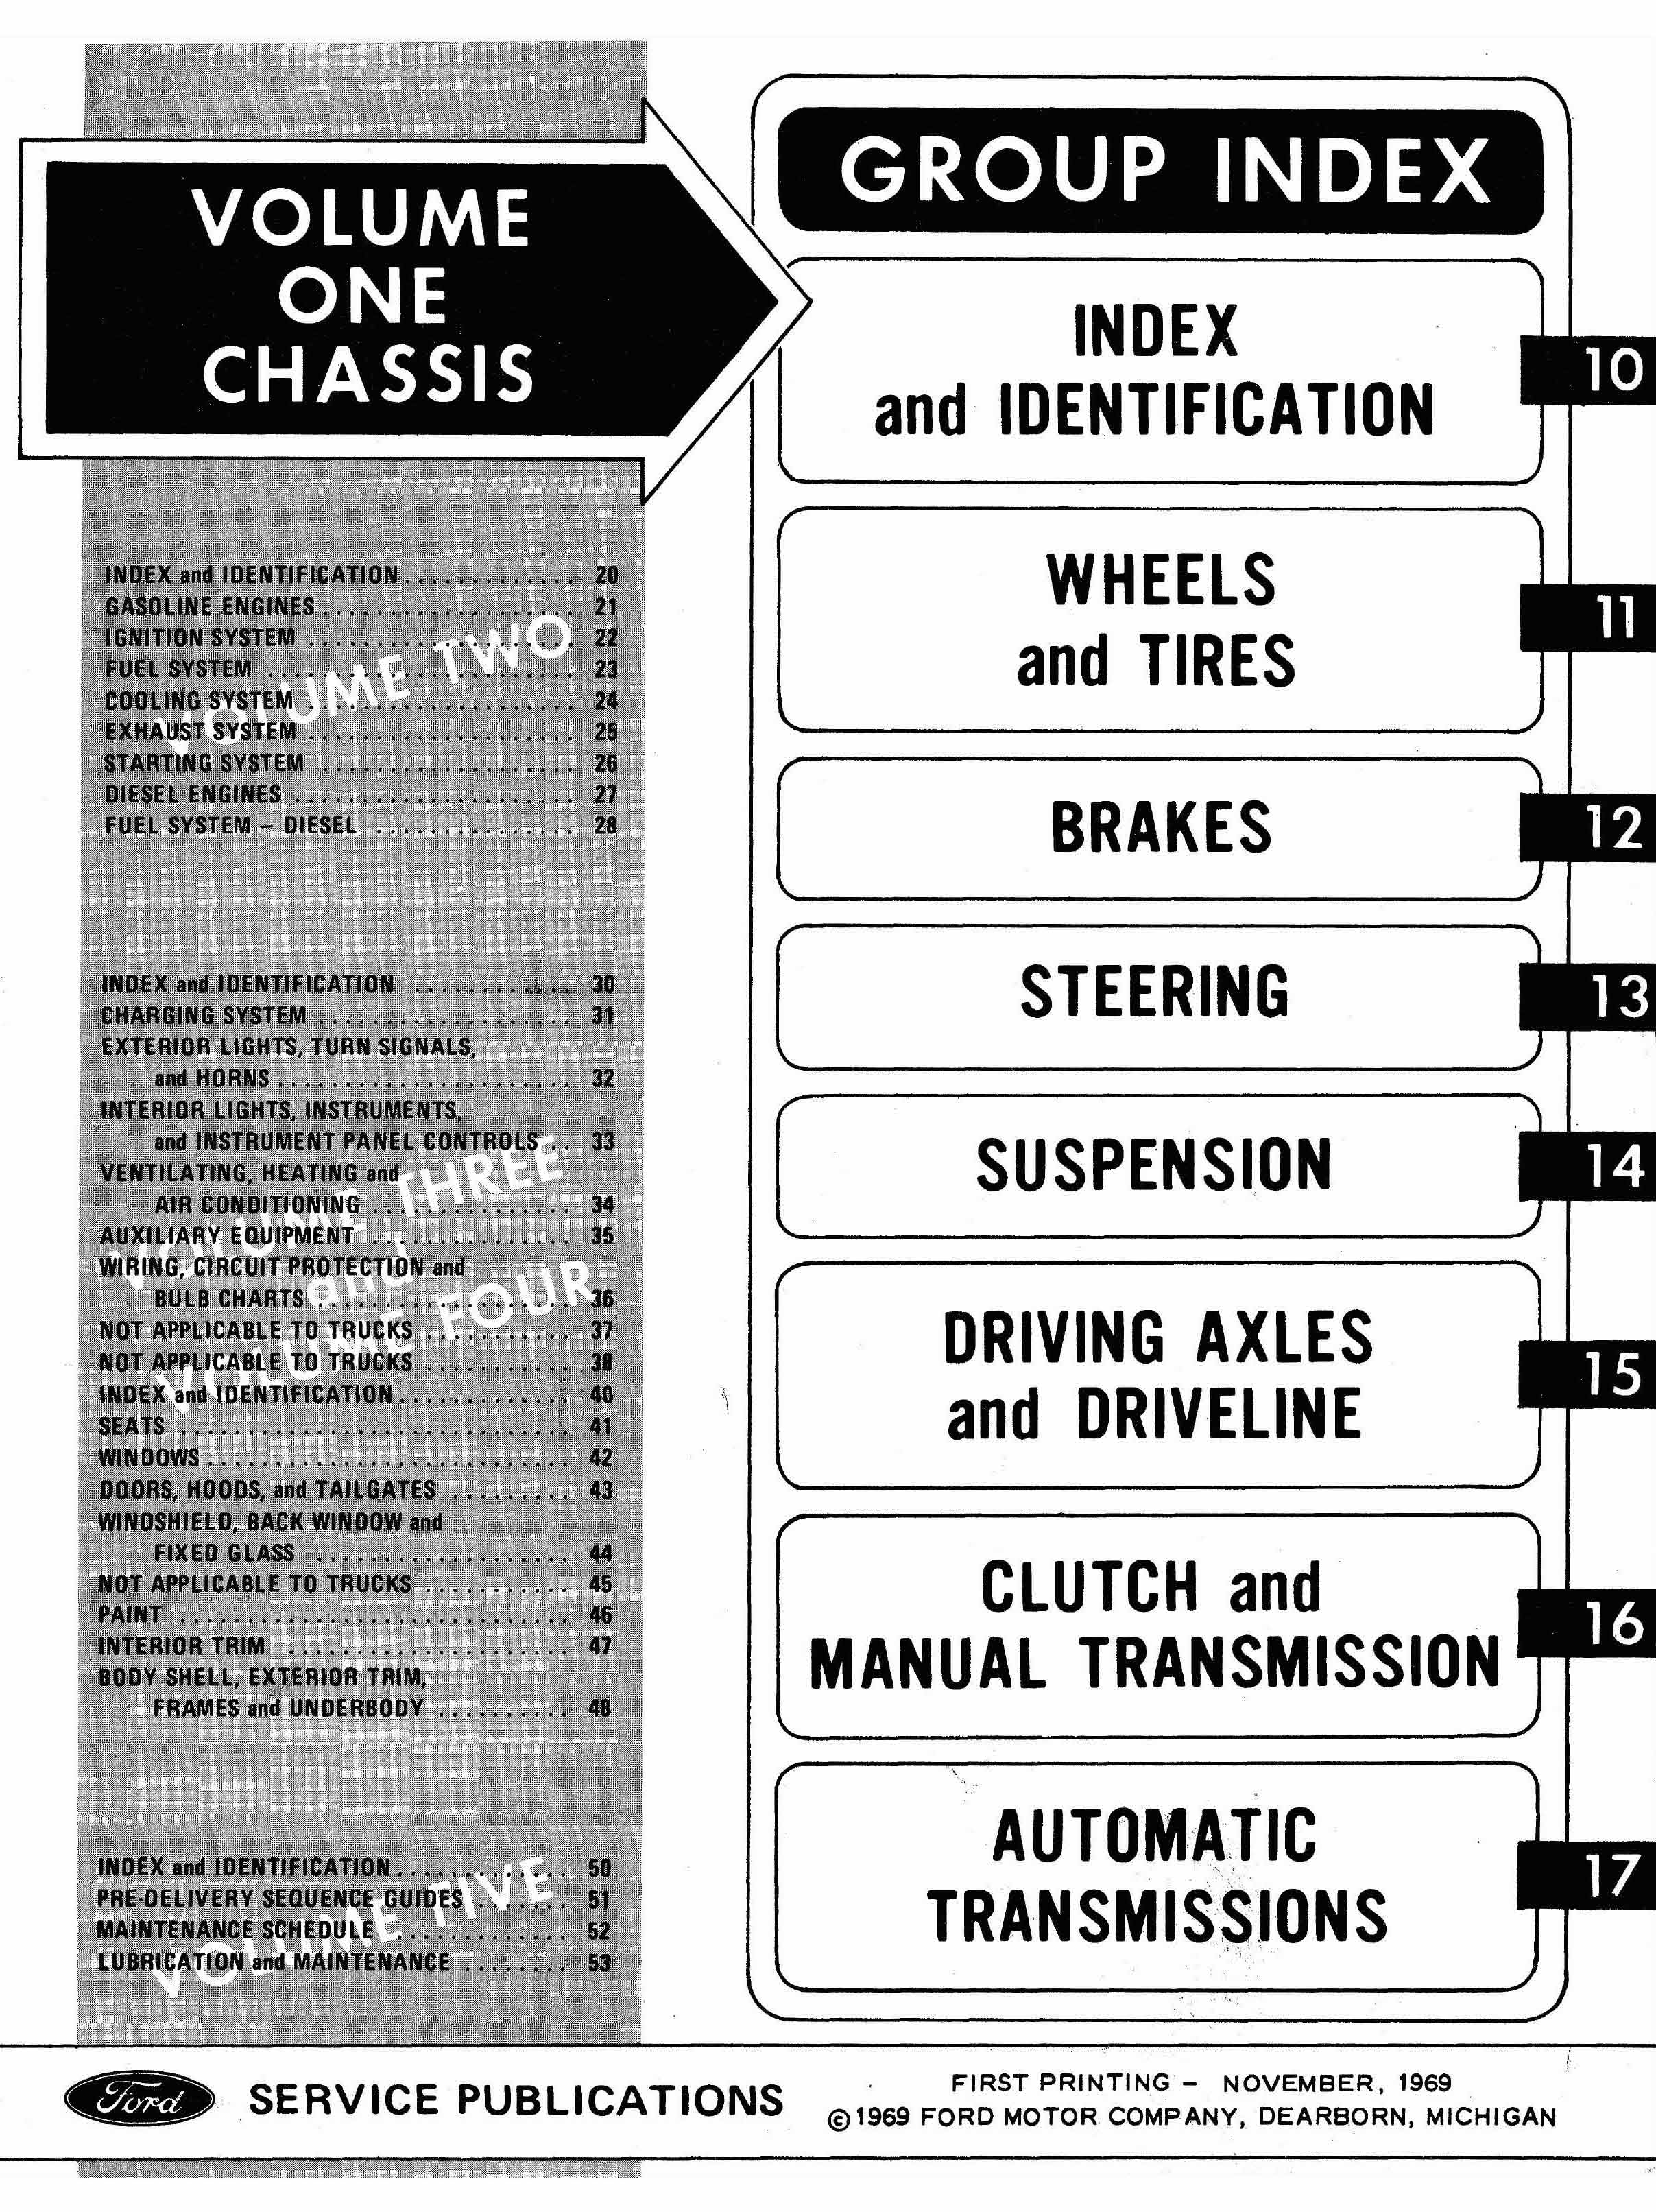 1970 Ford truck repair manual #1